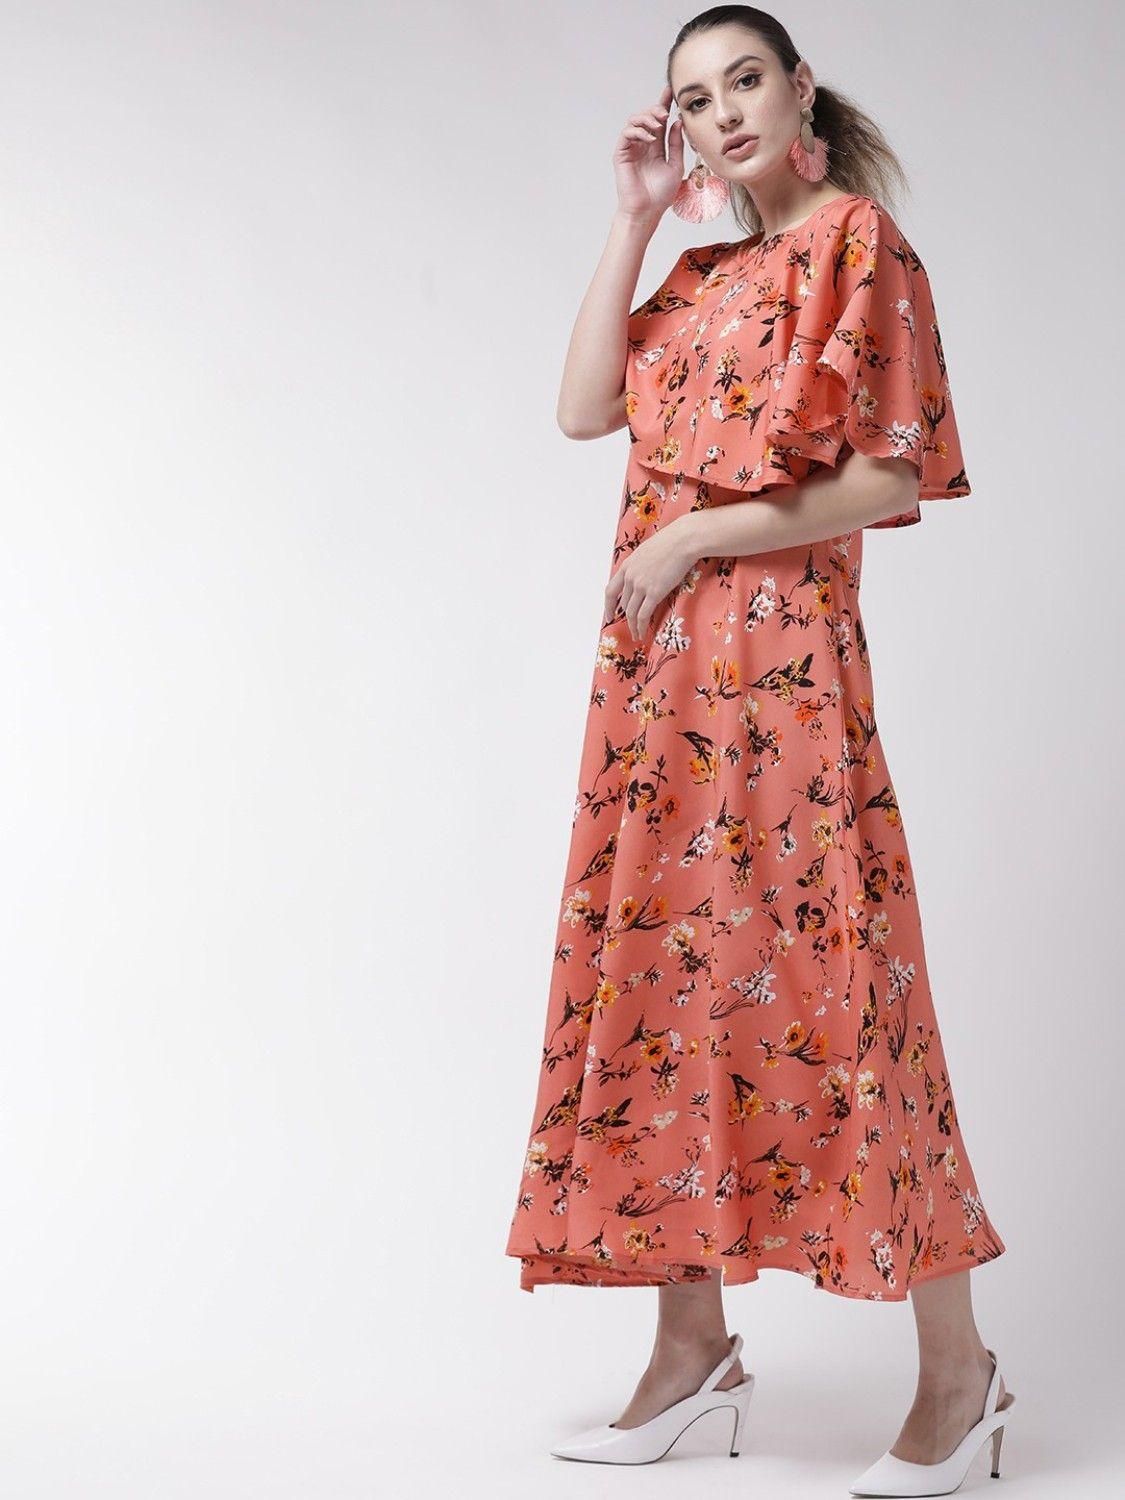 Women's Crepe Printed Maxi Dress